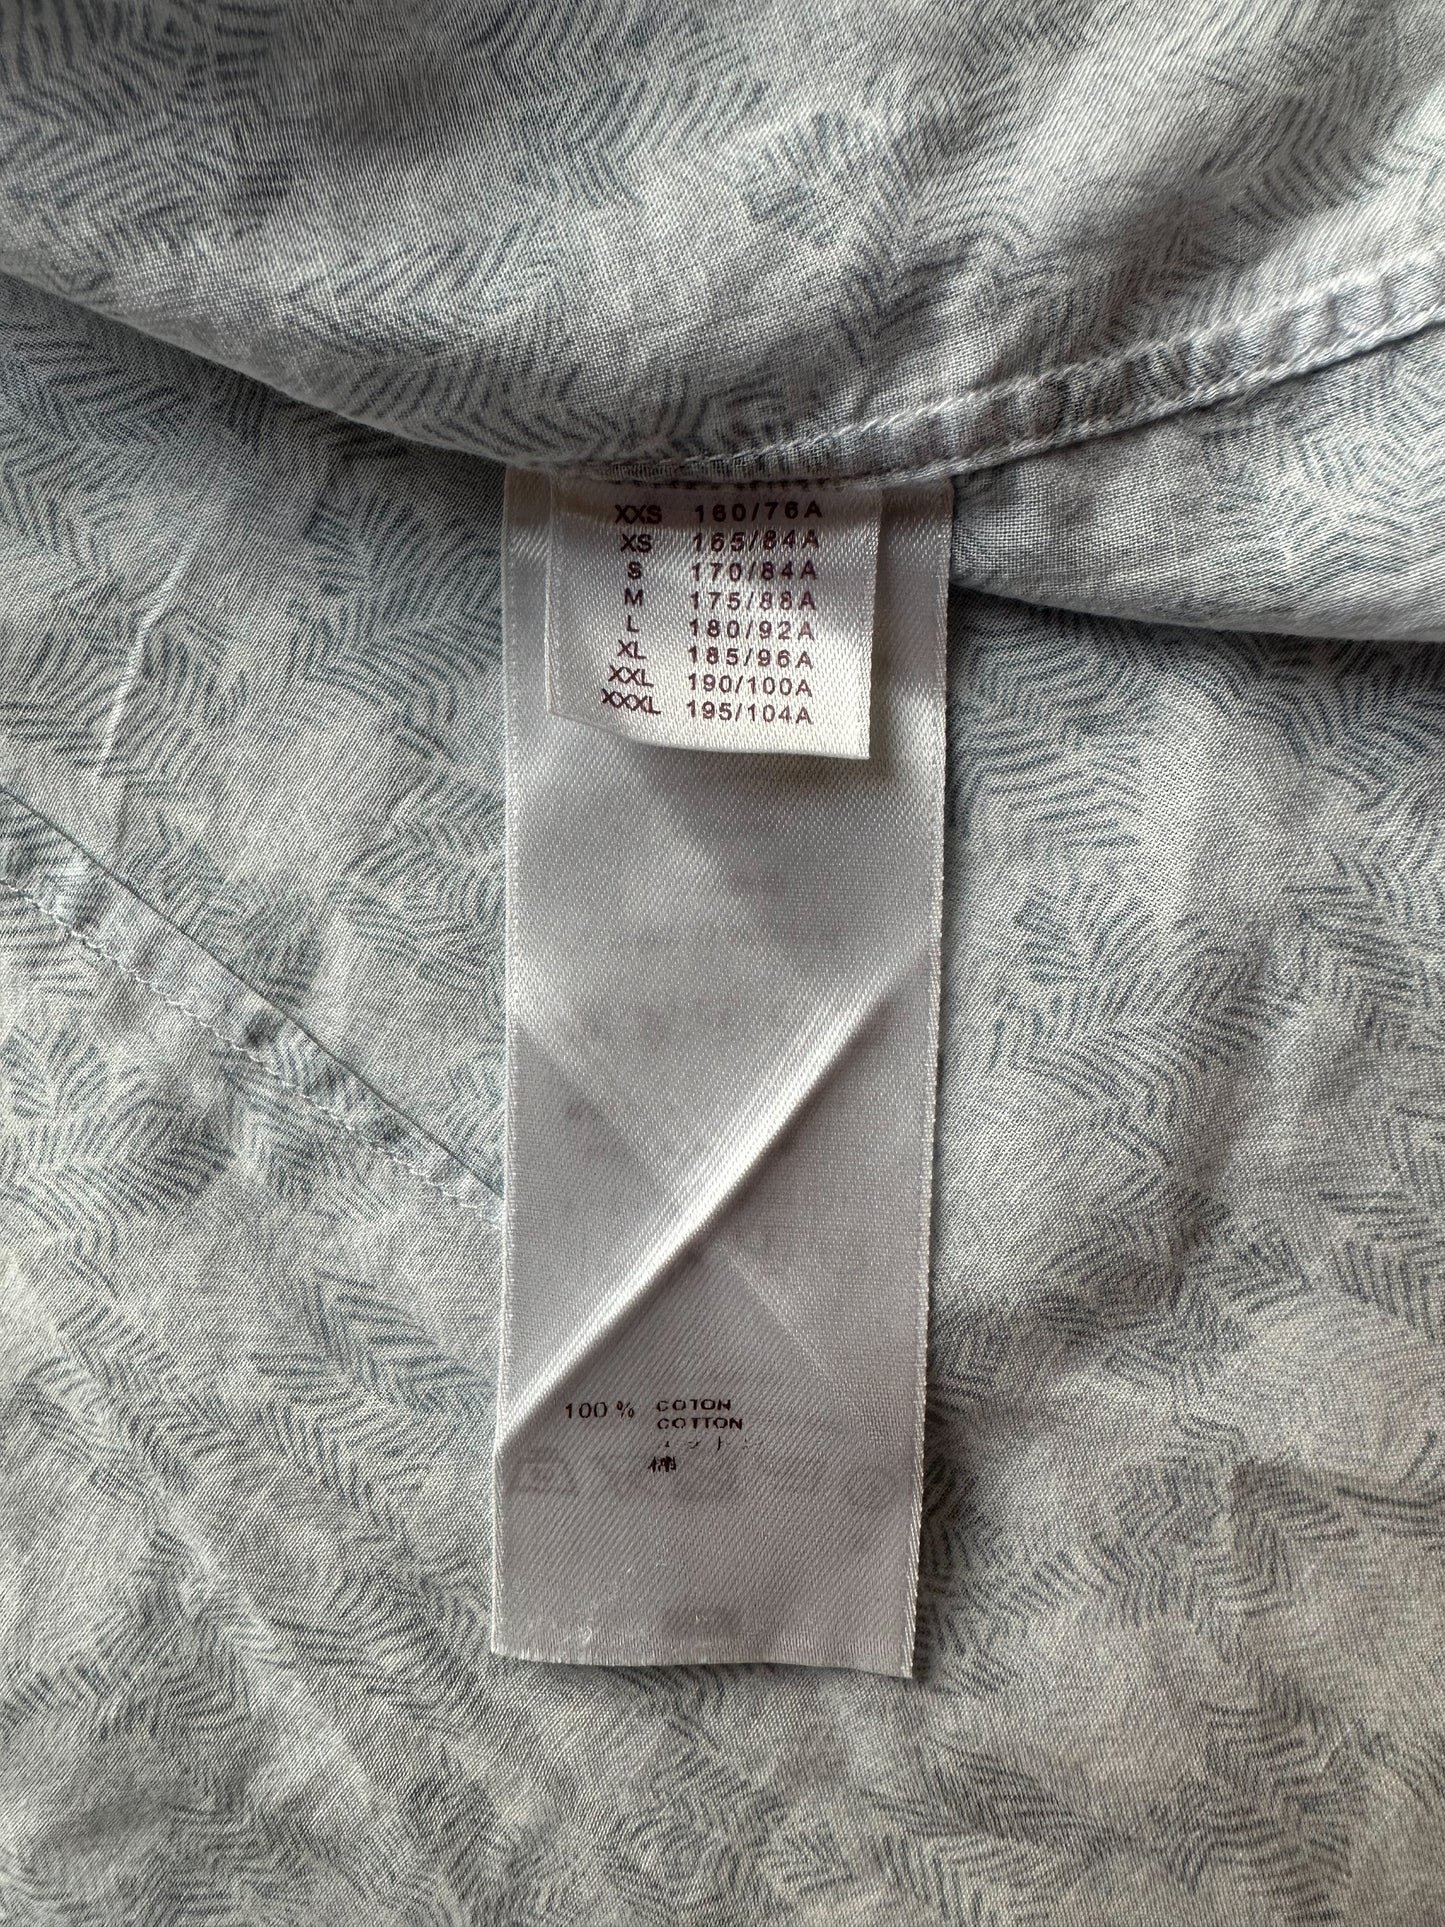 Louis Vuitton Sky Blue Pocket Detail Button Front Shirt L Louis